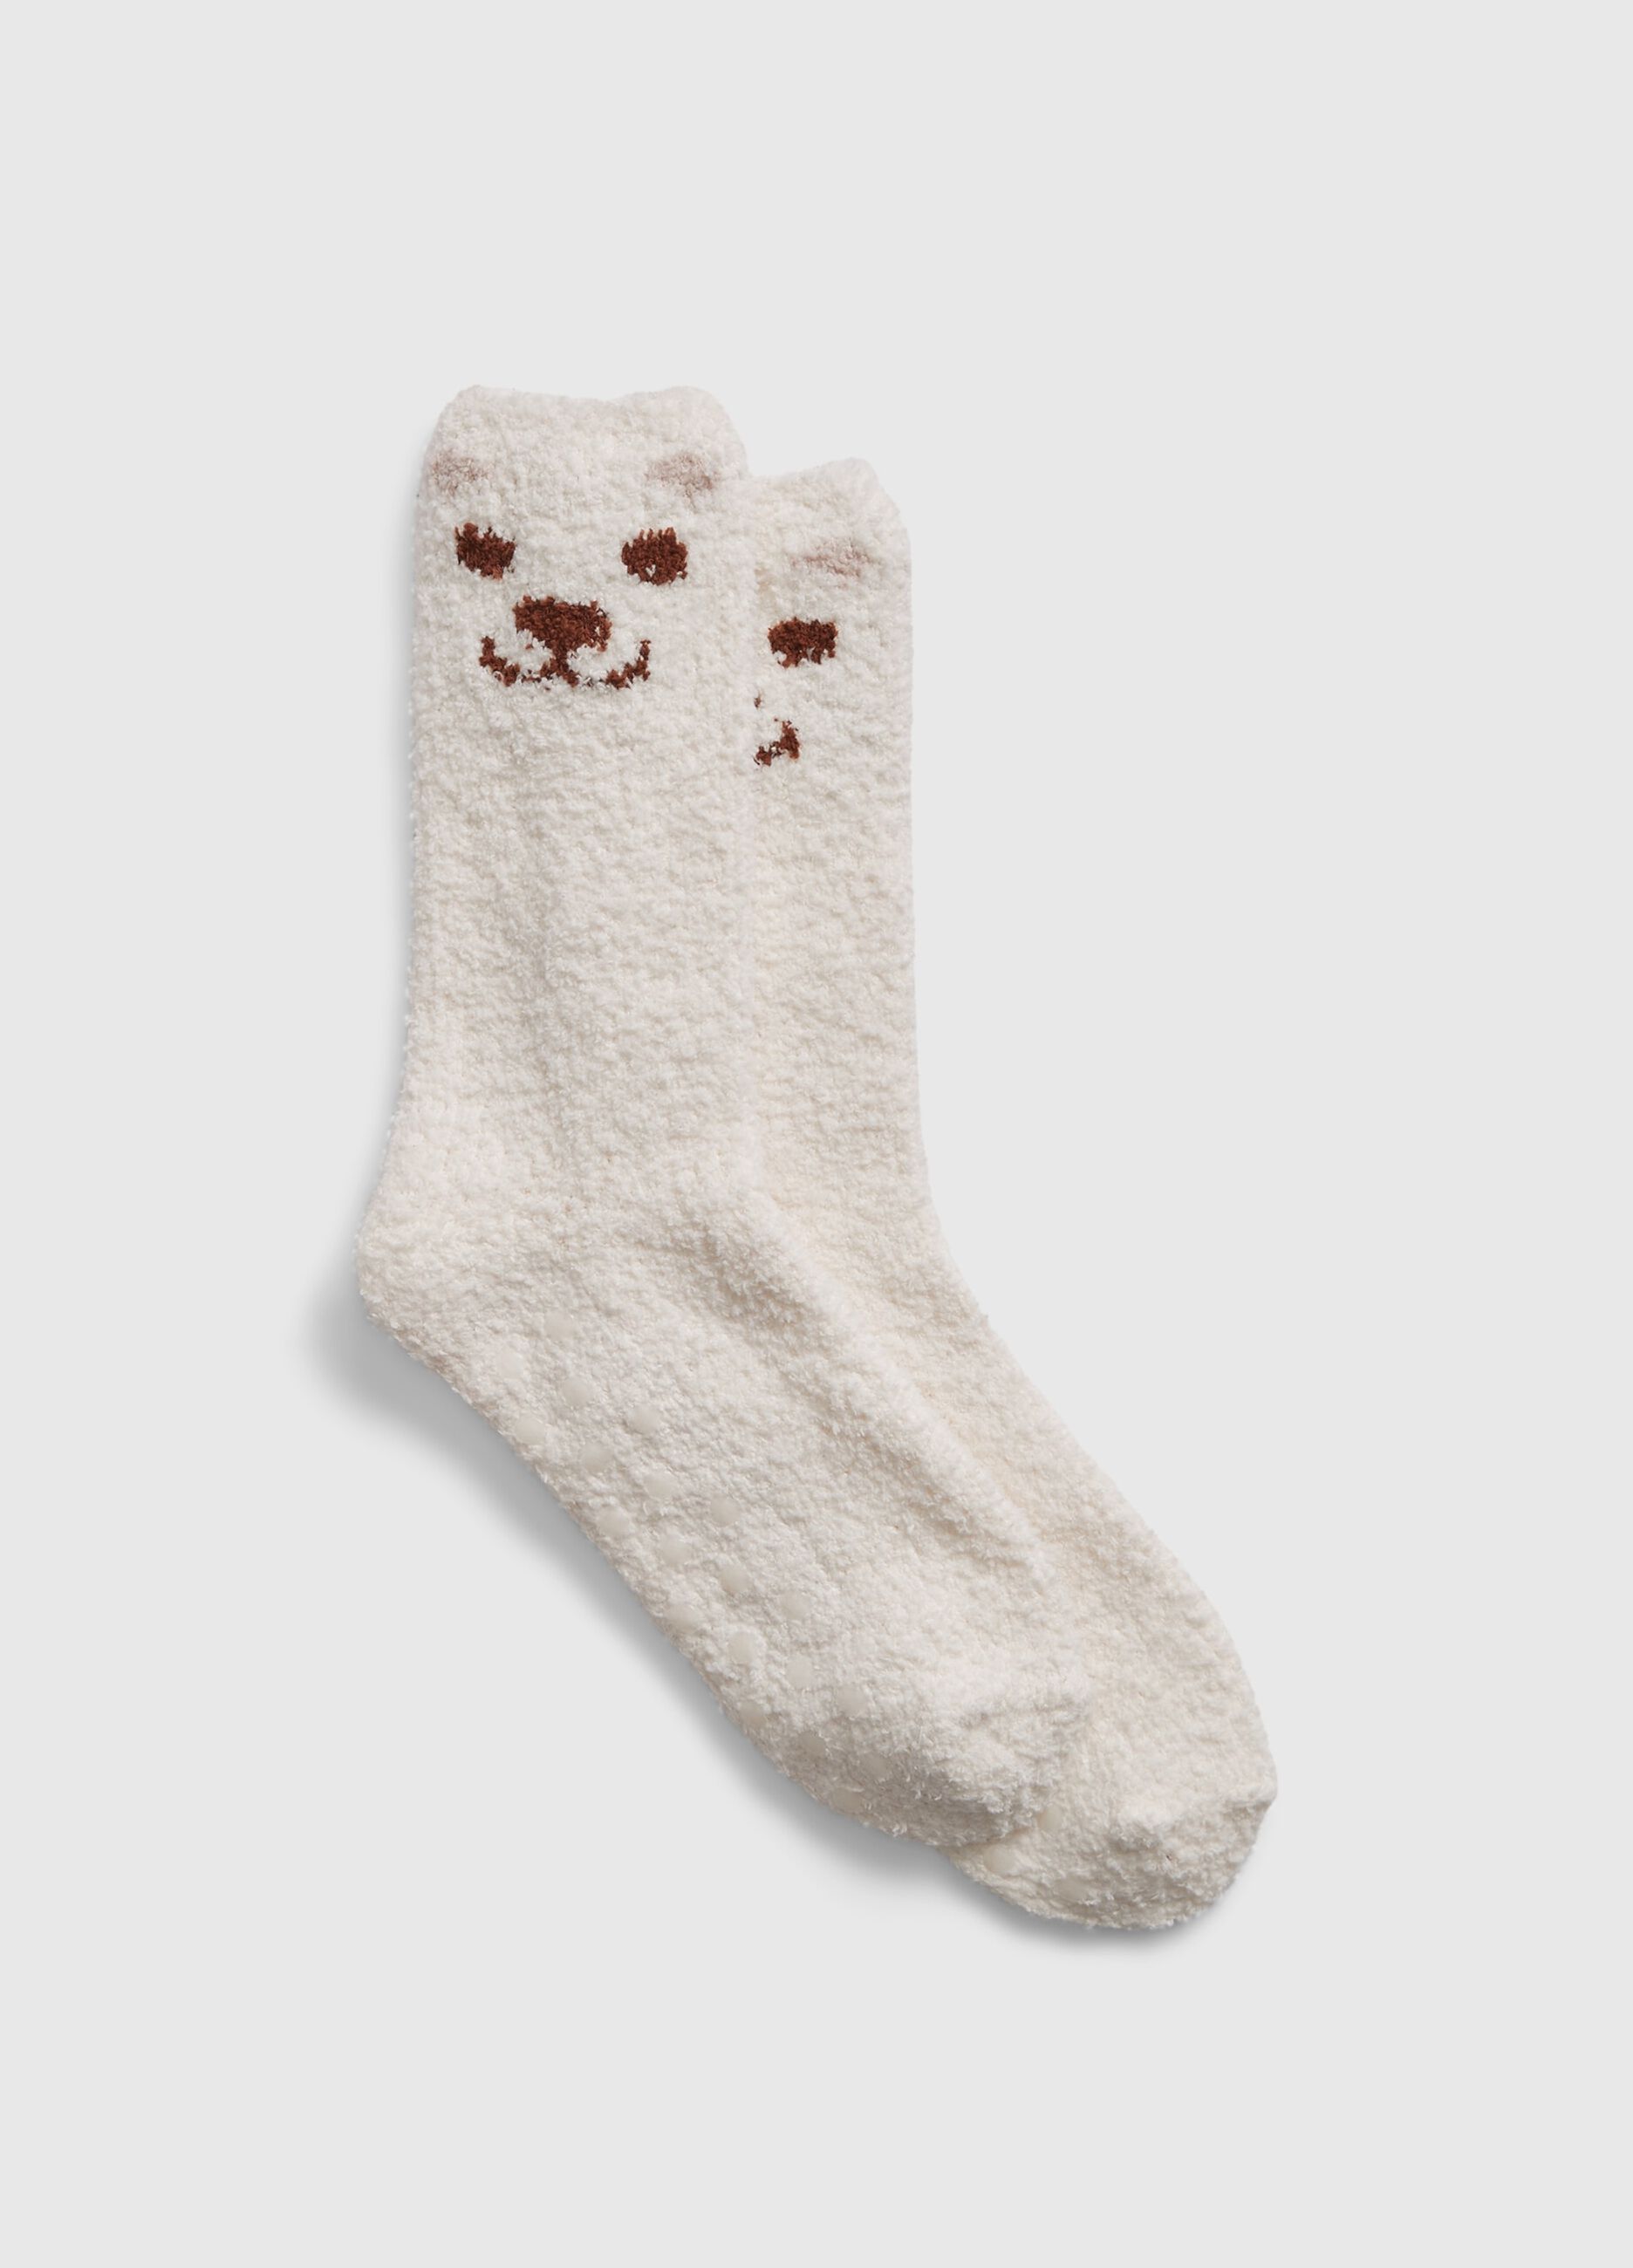 Slipper socks with Bear design